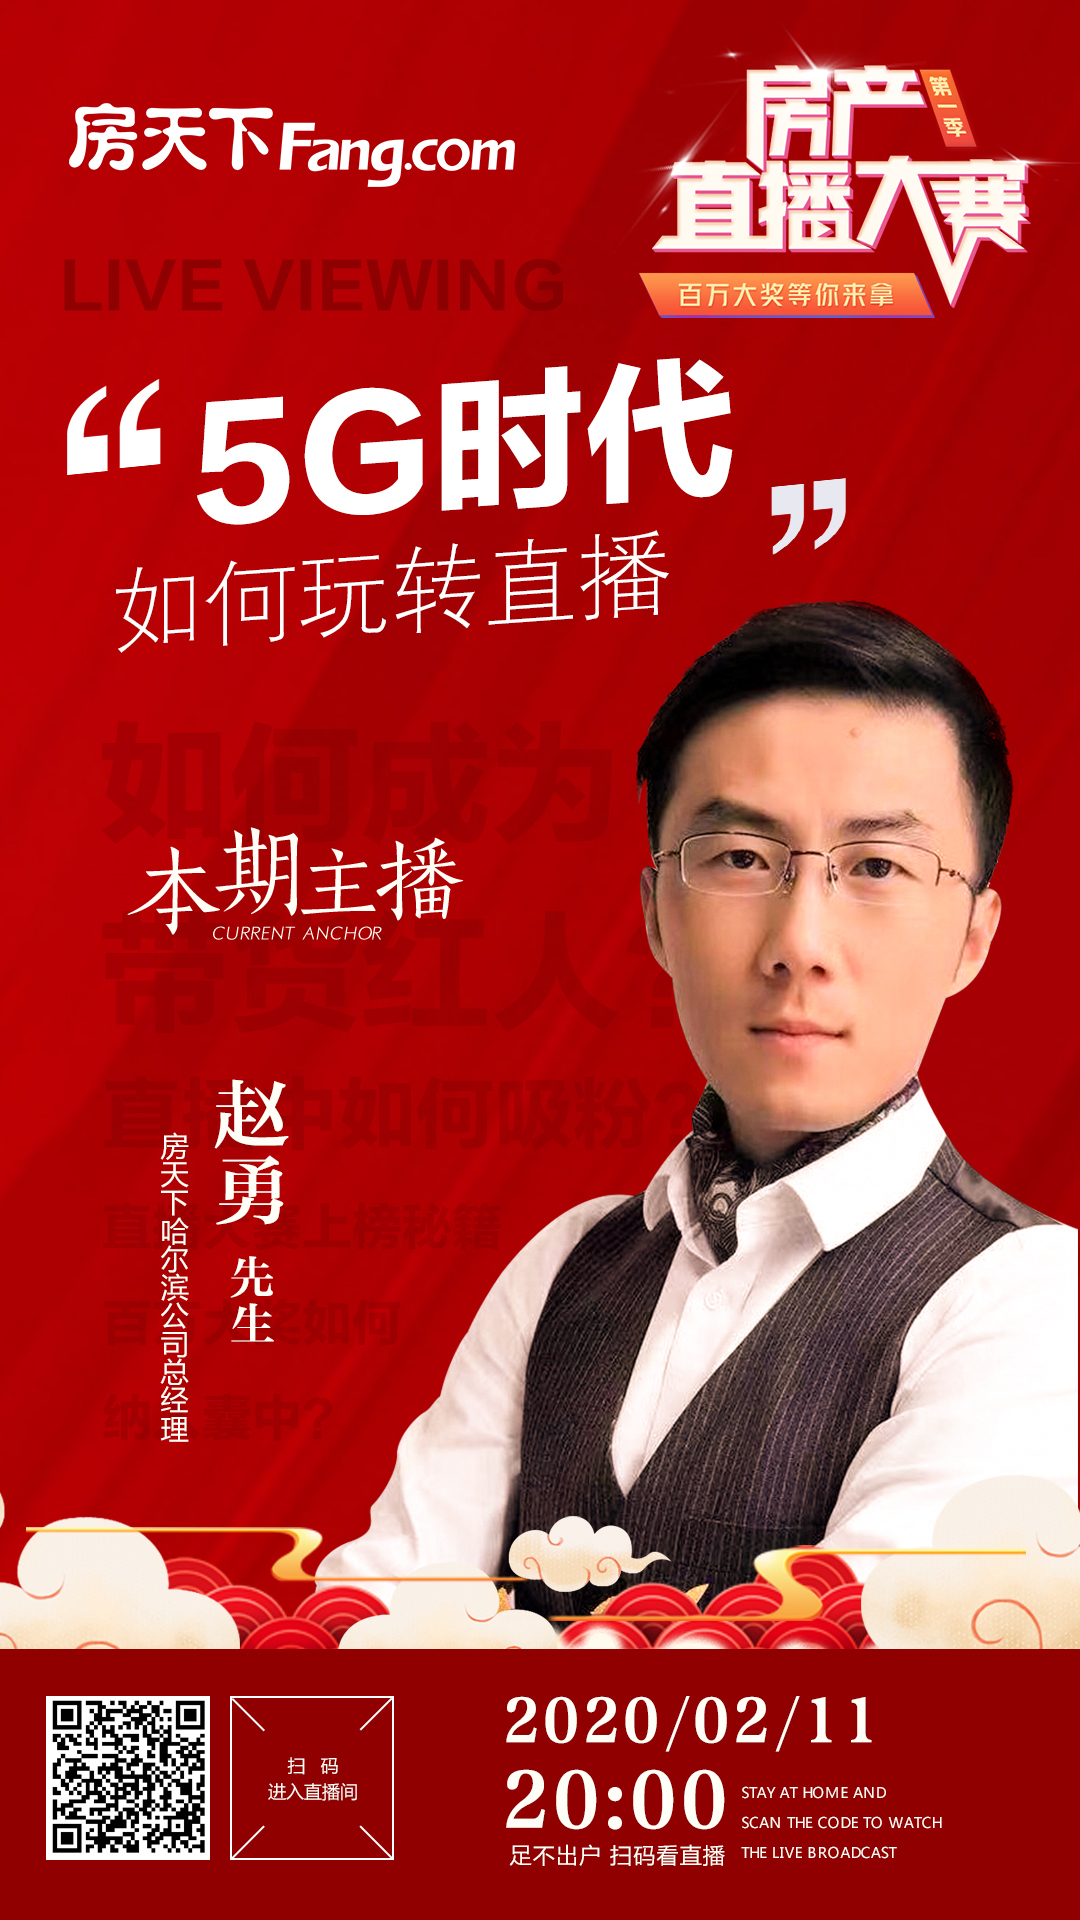 今晚8点主播赵勇与你分享 ：5G时代如何玩转直播？